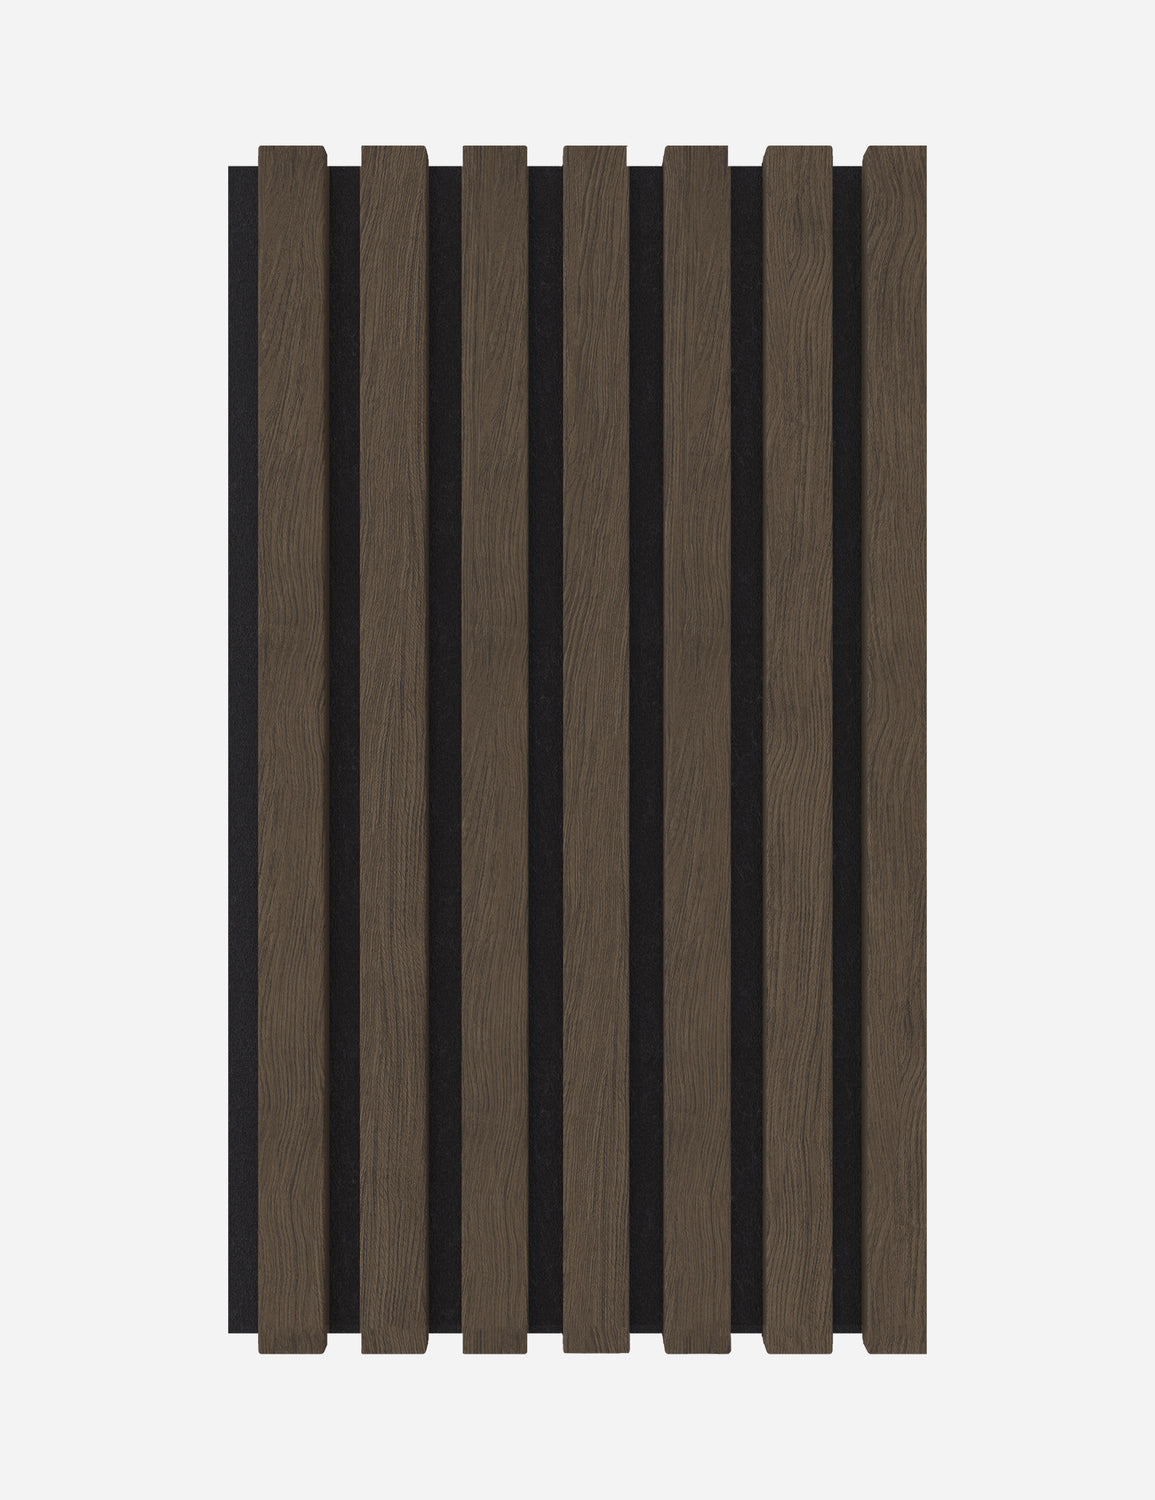 Muster Eiche Dunkel Massiv Plus - Filz schwarz 20x12cm